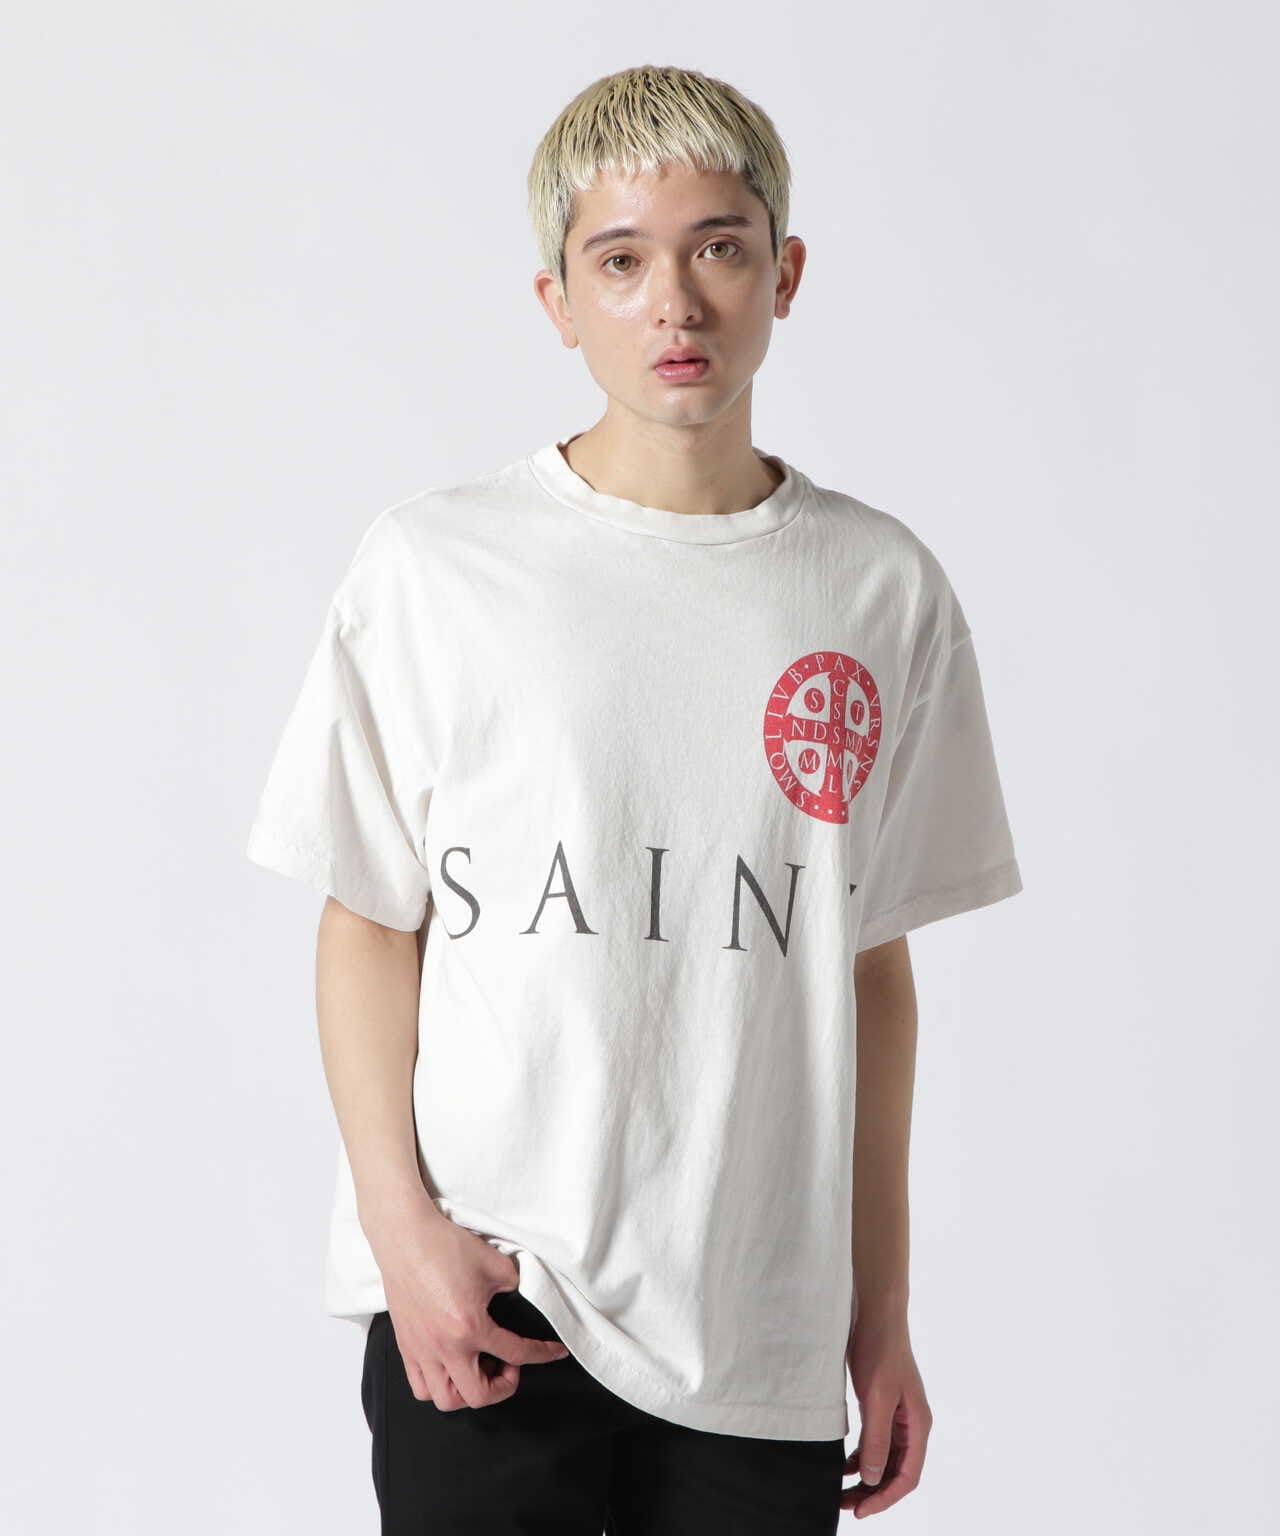 SAINTMxxxxxx【入手困難】 SAINTMxxxxxx セントマイケル 半袖 Tシャツ ホワイト